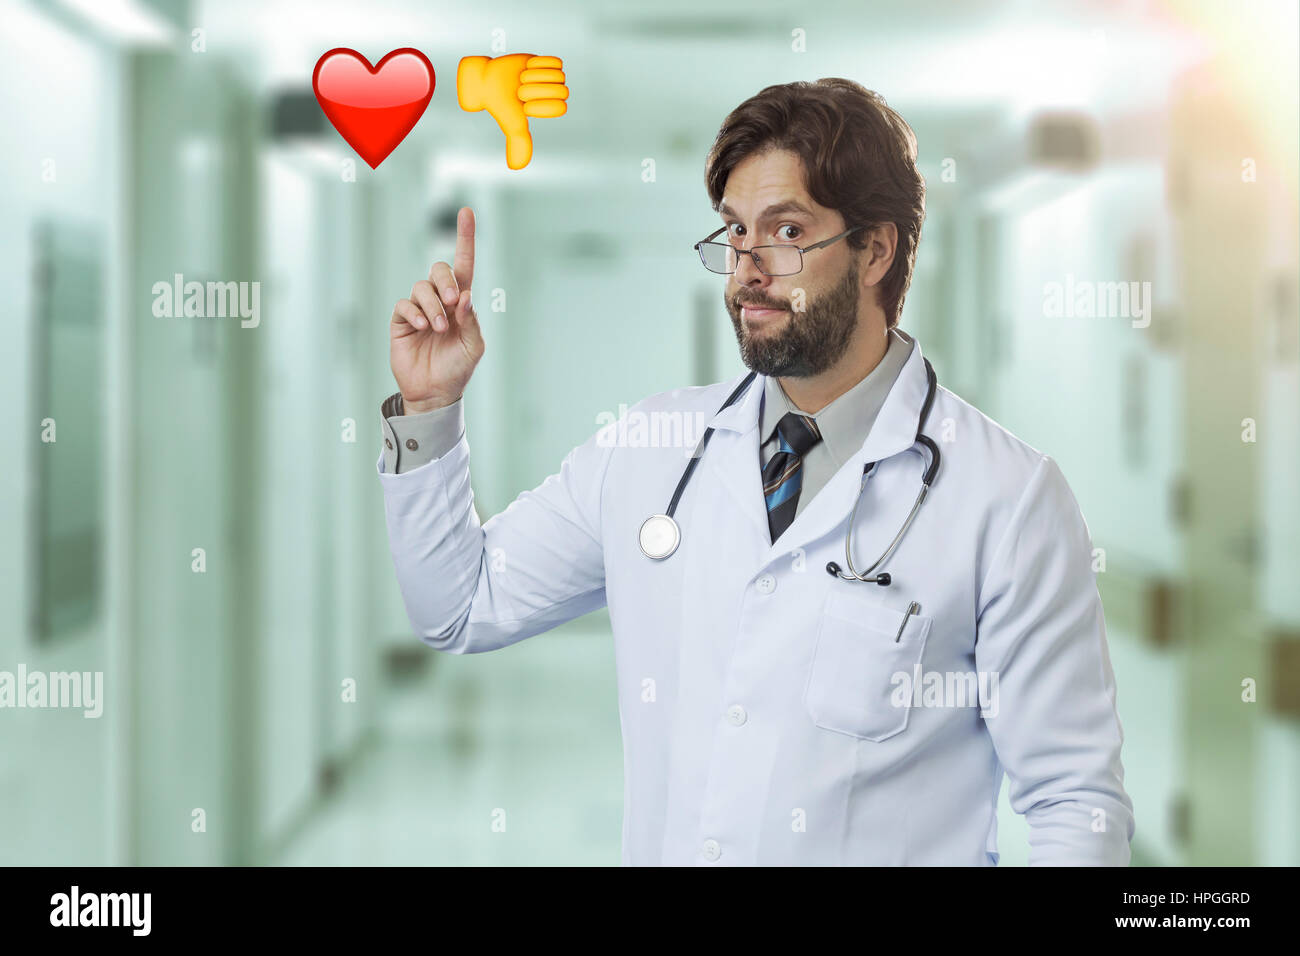 Männlichen Arzt in einem Krankenhaus auf einige Emojis. Stockfoto